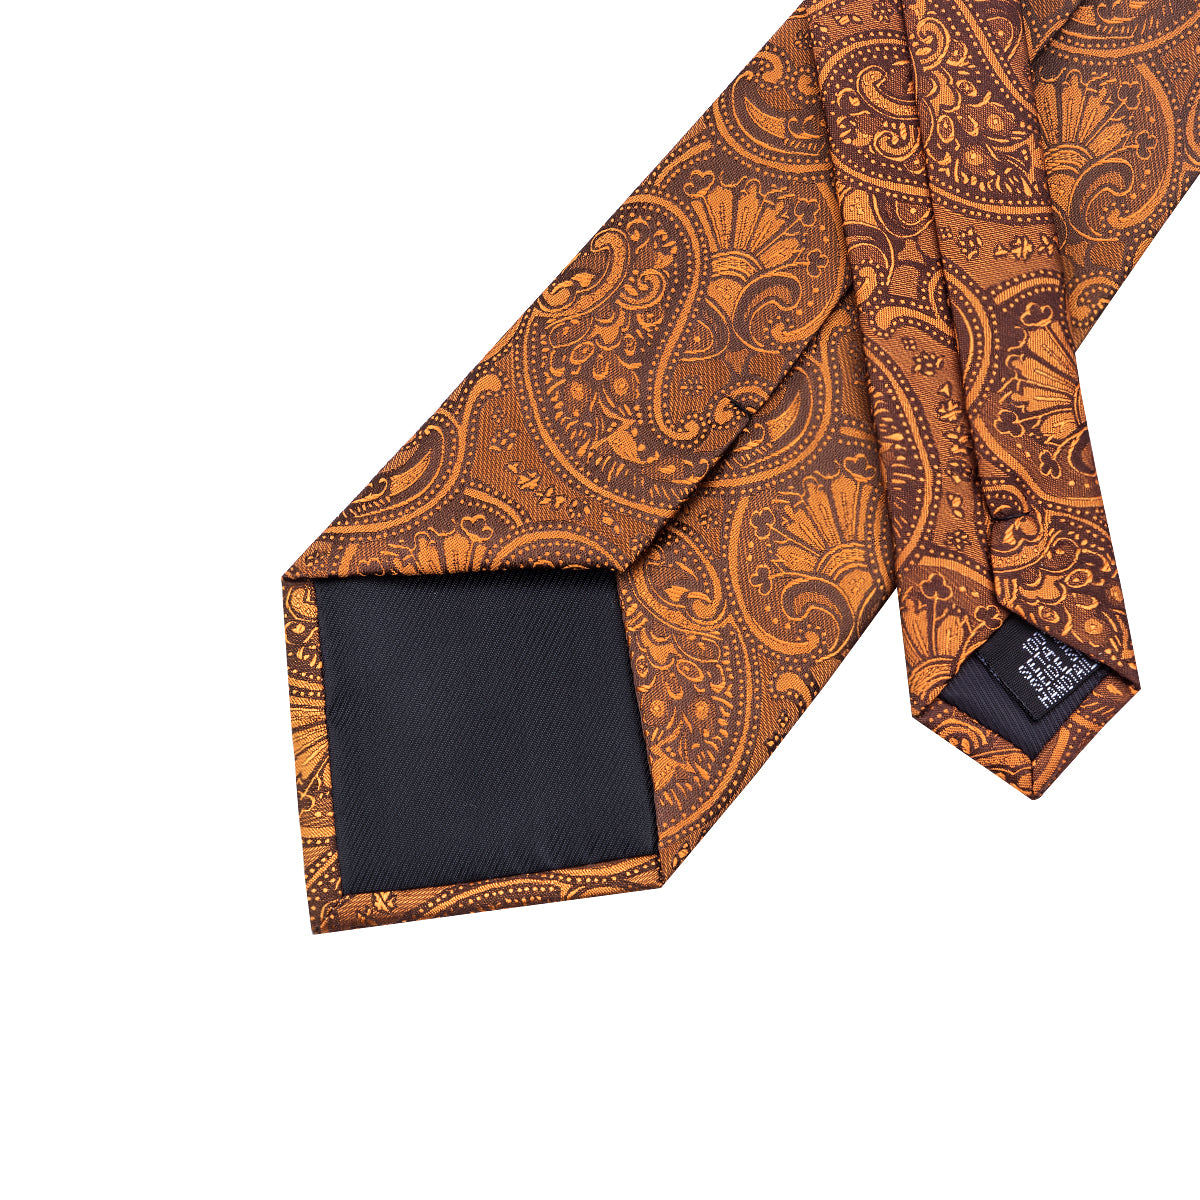  Ruddy Brown Necktie Floral Mens Tie Pocket Square Cufflinks Set